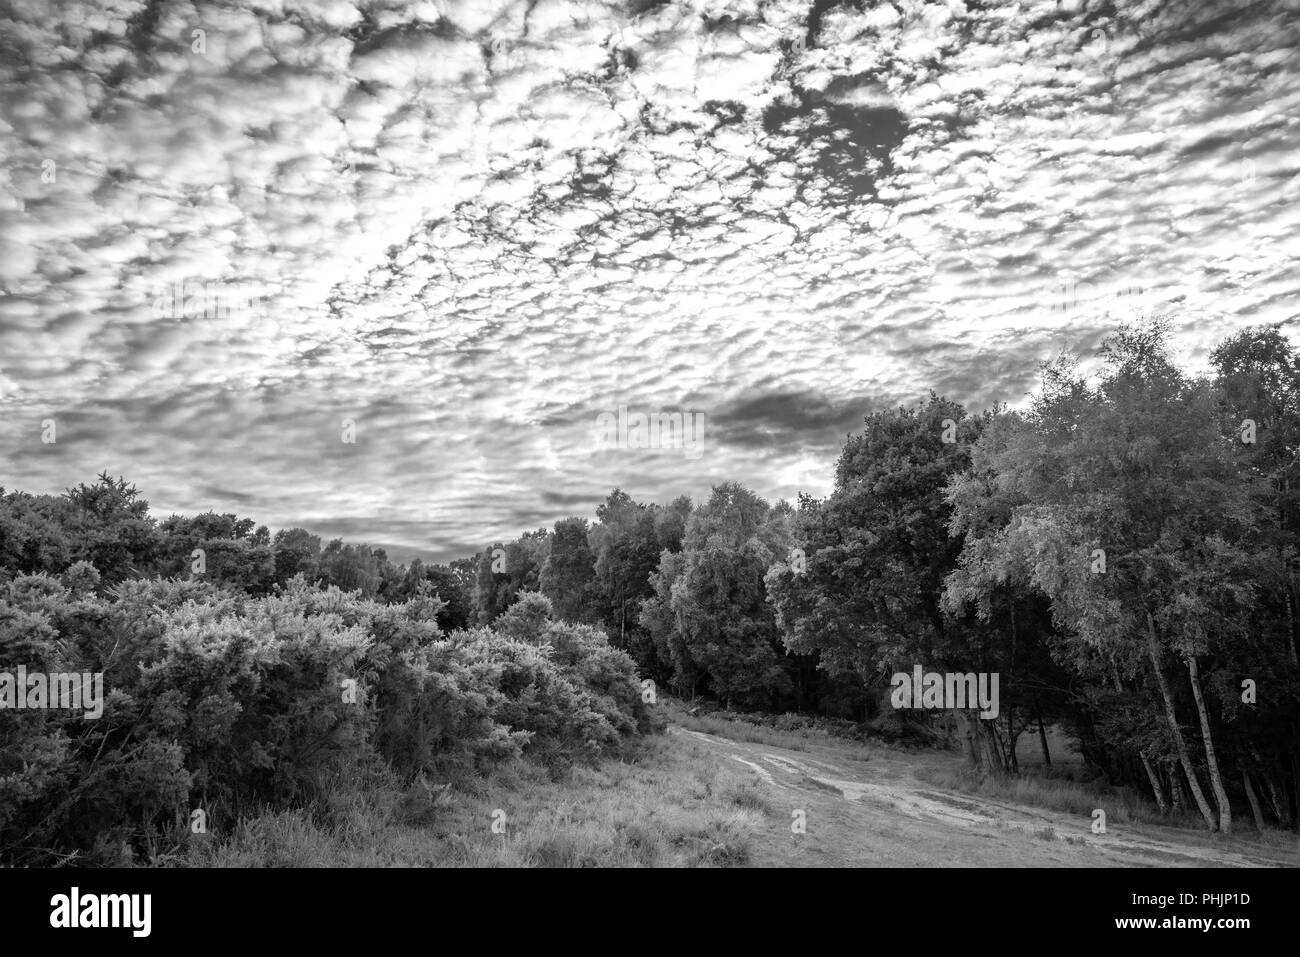 Atemberaubende Makrele Himmel - altocumulus Wolkenformationen im Sommer himmel landschaft Schwarz/Weiß-Bild Stockfoto